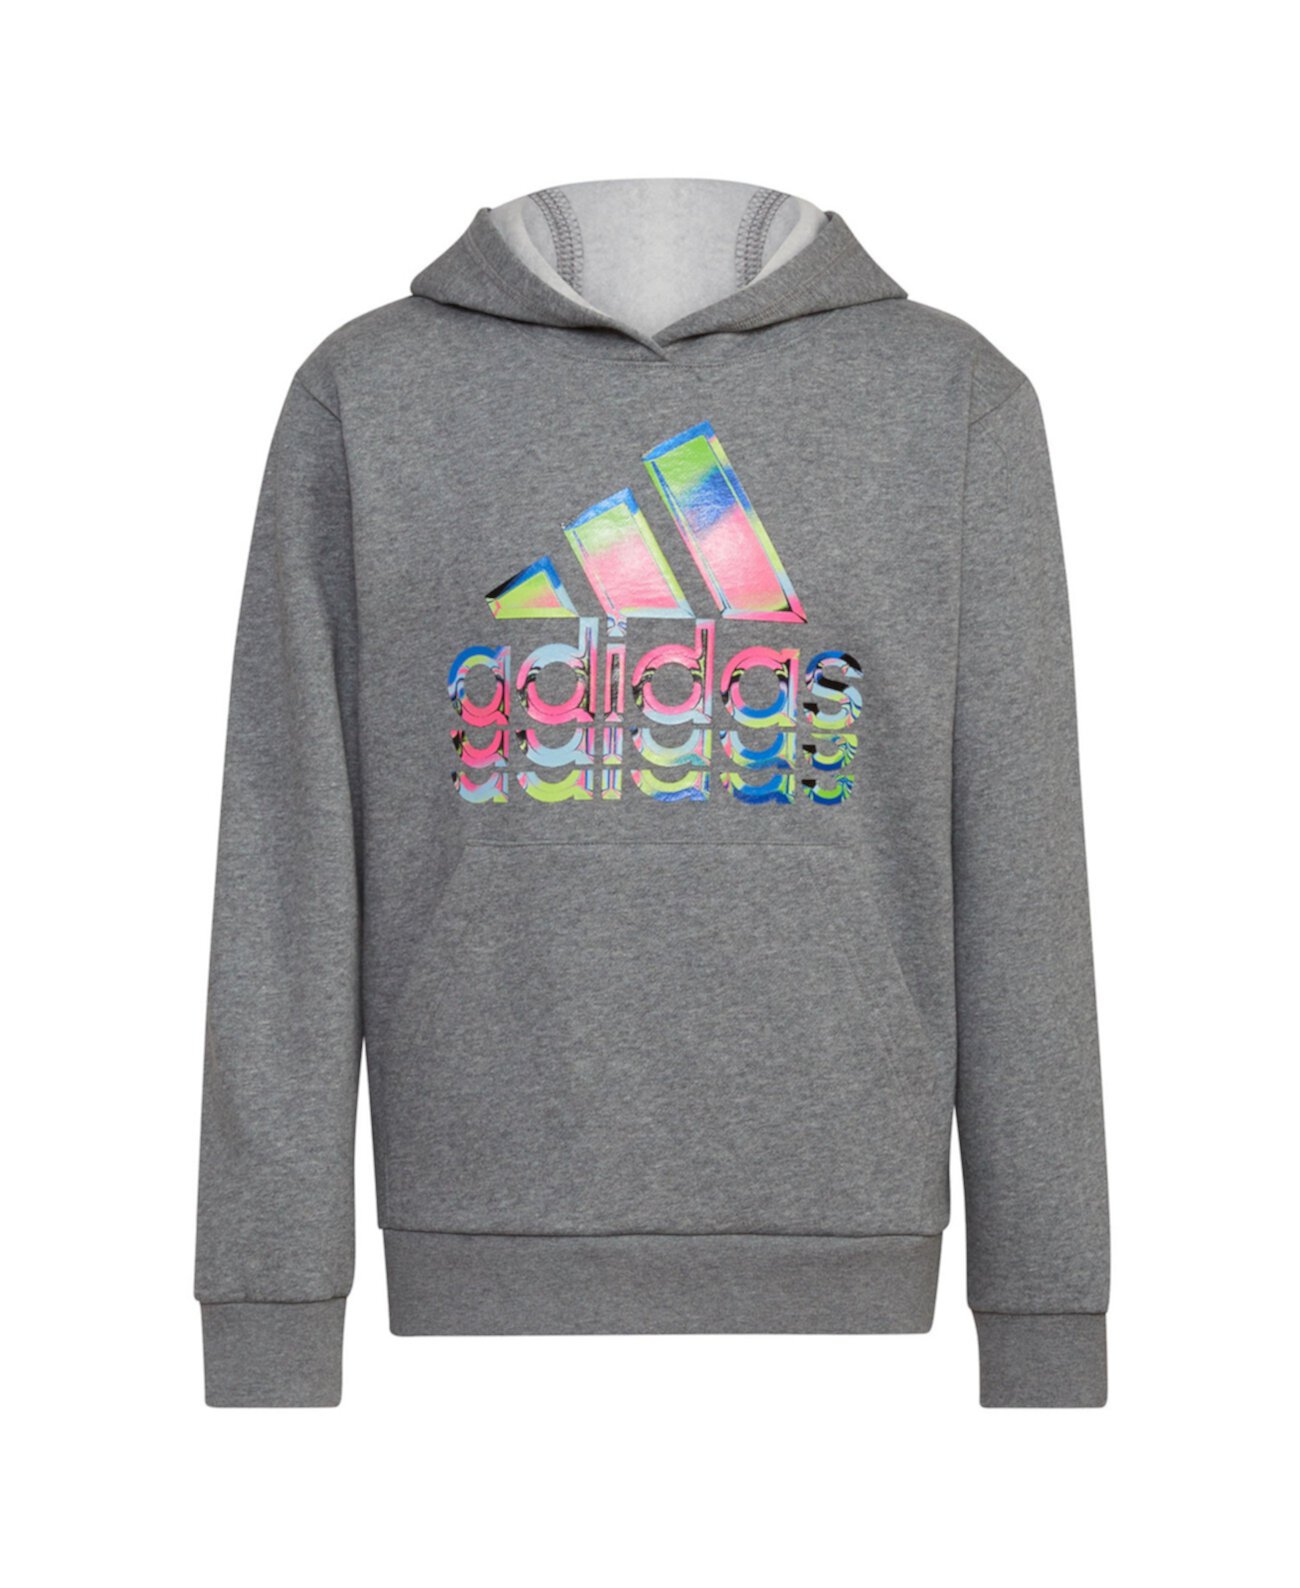 Толстовка с длинными рукавами и пуловером с графическим рисунком Big Boys Hyperreal Adidas